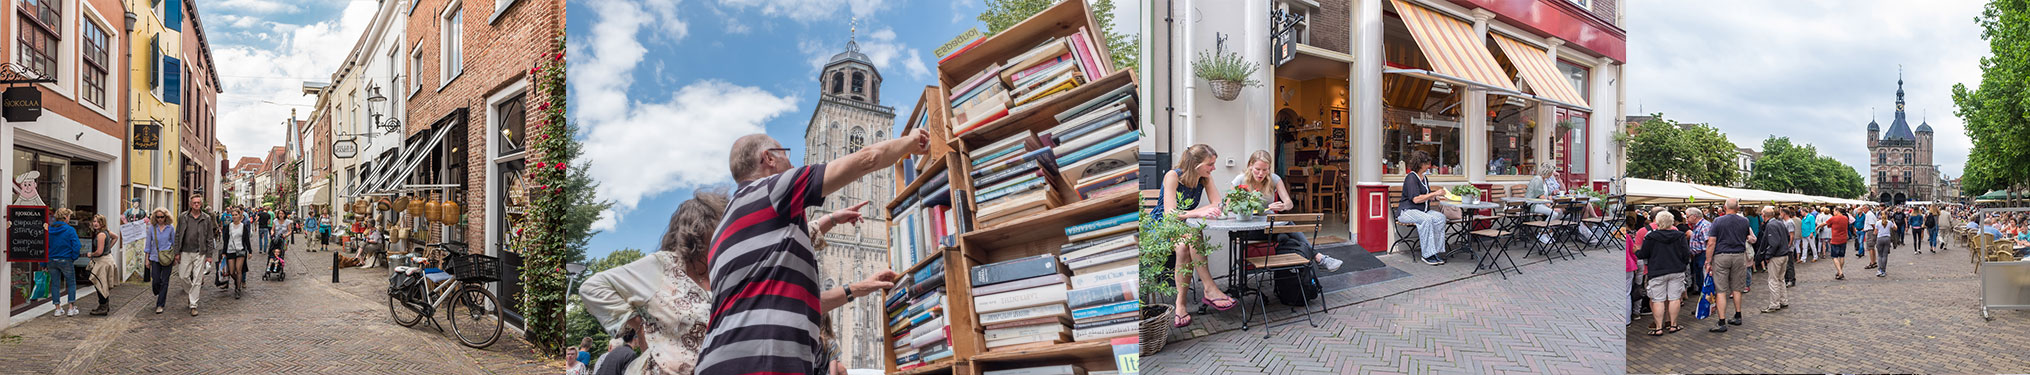 Koopzondag 5 augustus 2018 Boekenmarkt Deventer